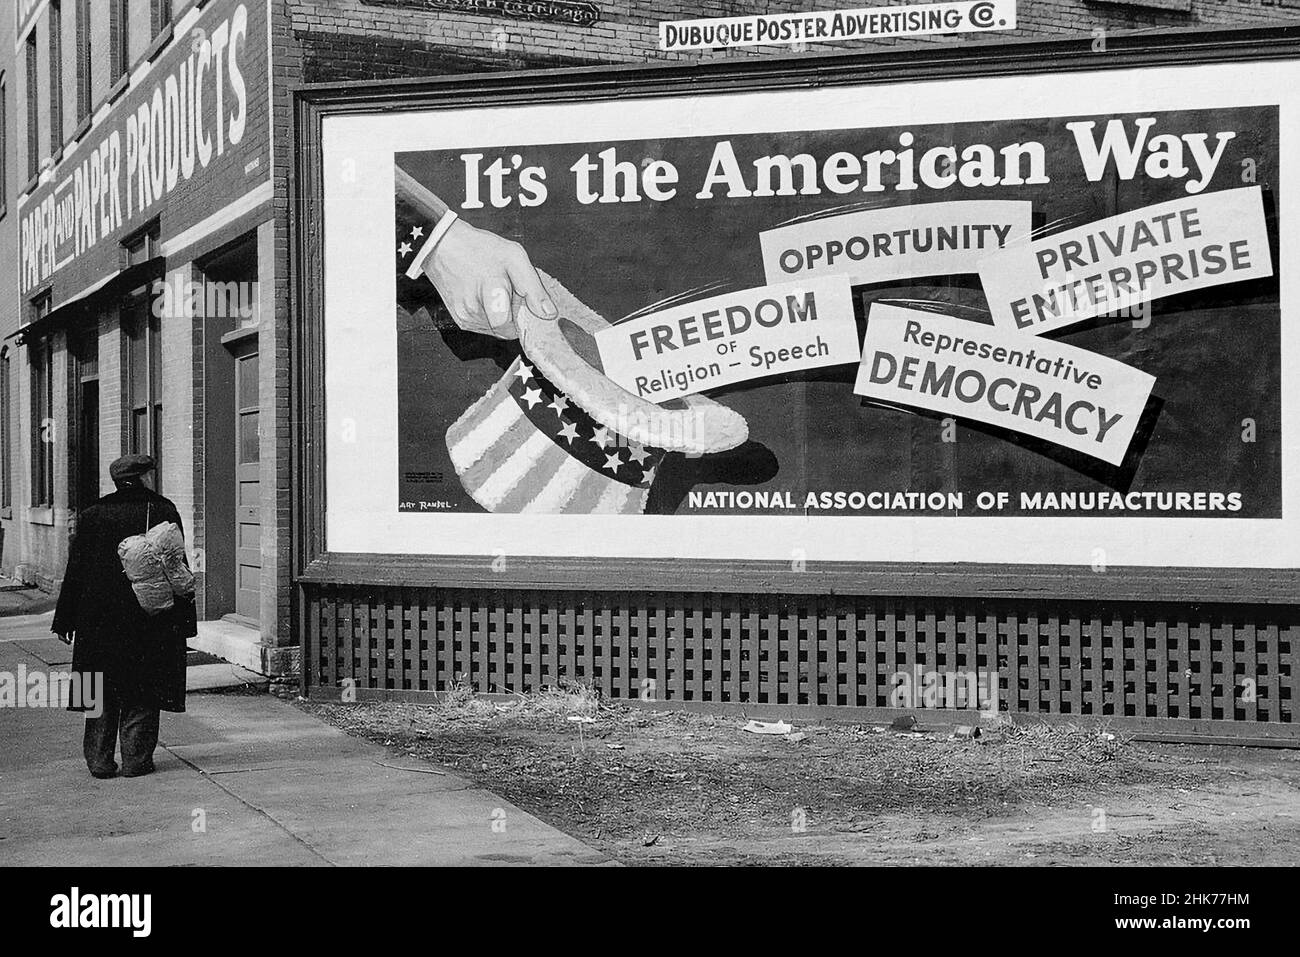 "AMERICAN WAY" CONTRASTE DE STYLE DE VIE USA Rich & Poor Archive des années 1940 contrastes américains dans le style de vie "ITS the American Way" panneau de l'Association nationale des fabricants, avec Down on HIS Luck Man passant par à Dubuque, Iowa, USA avril 1940 Banque D'Images